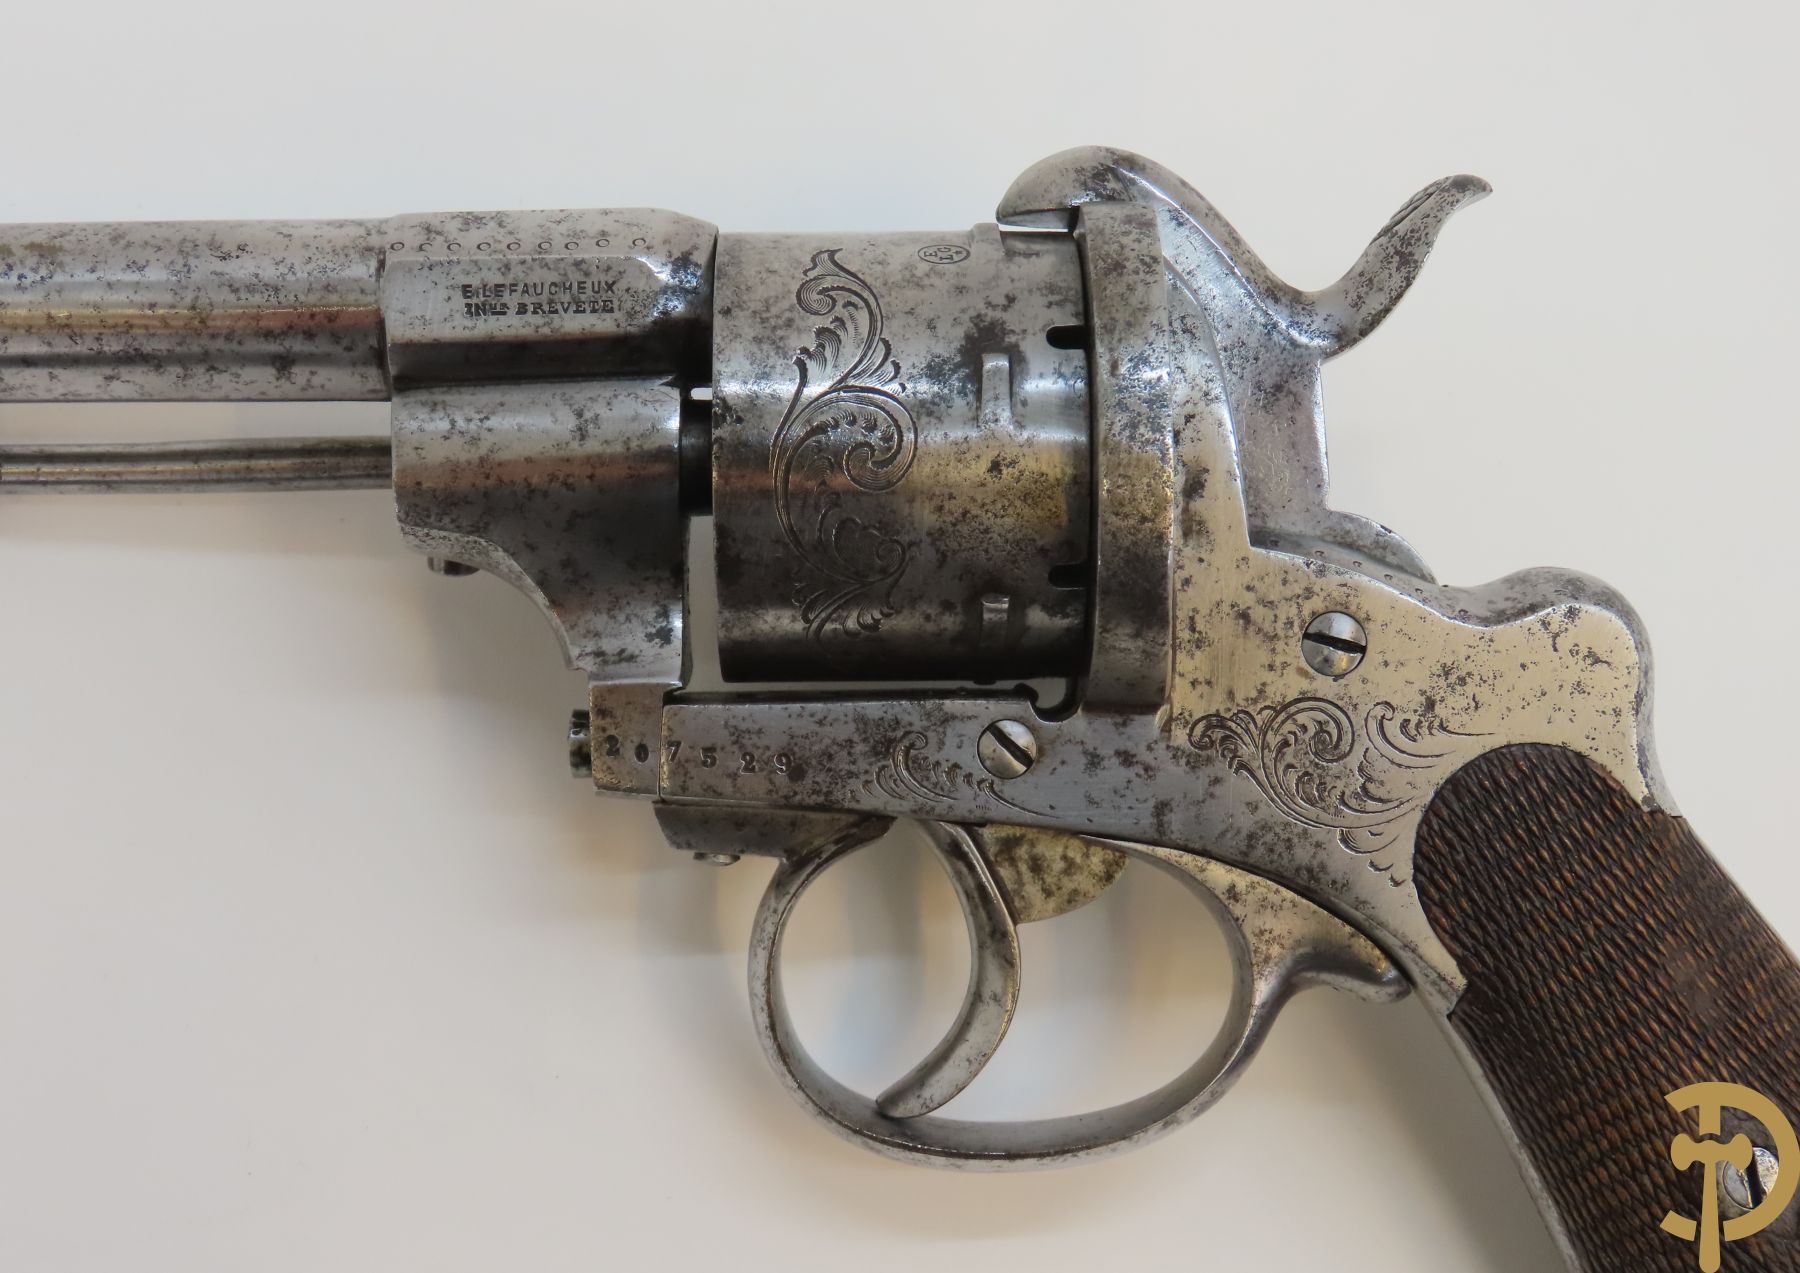 Grote Franse revolver, Lefaucheux E. getekend